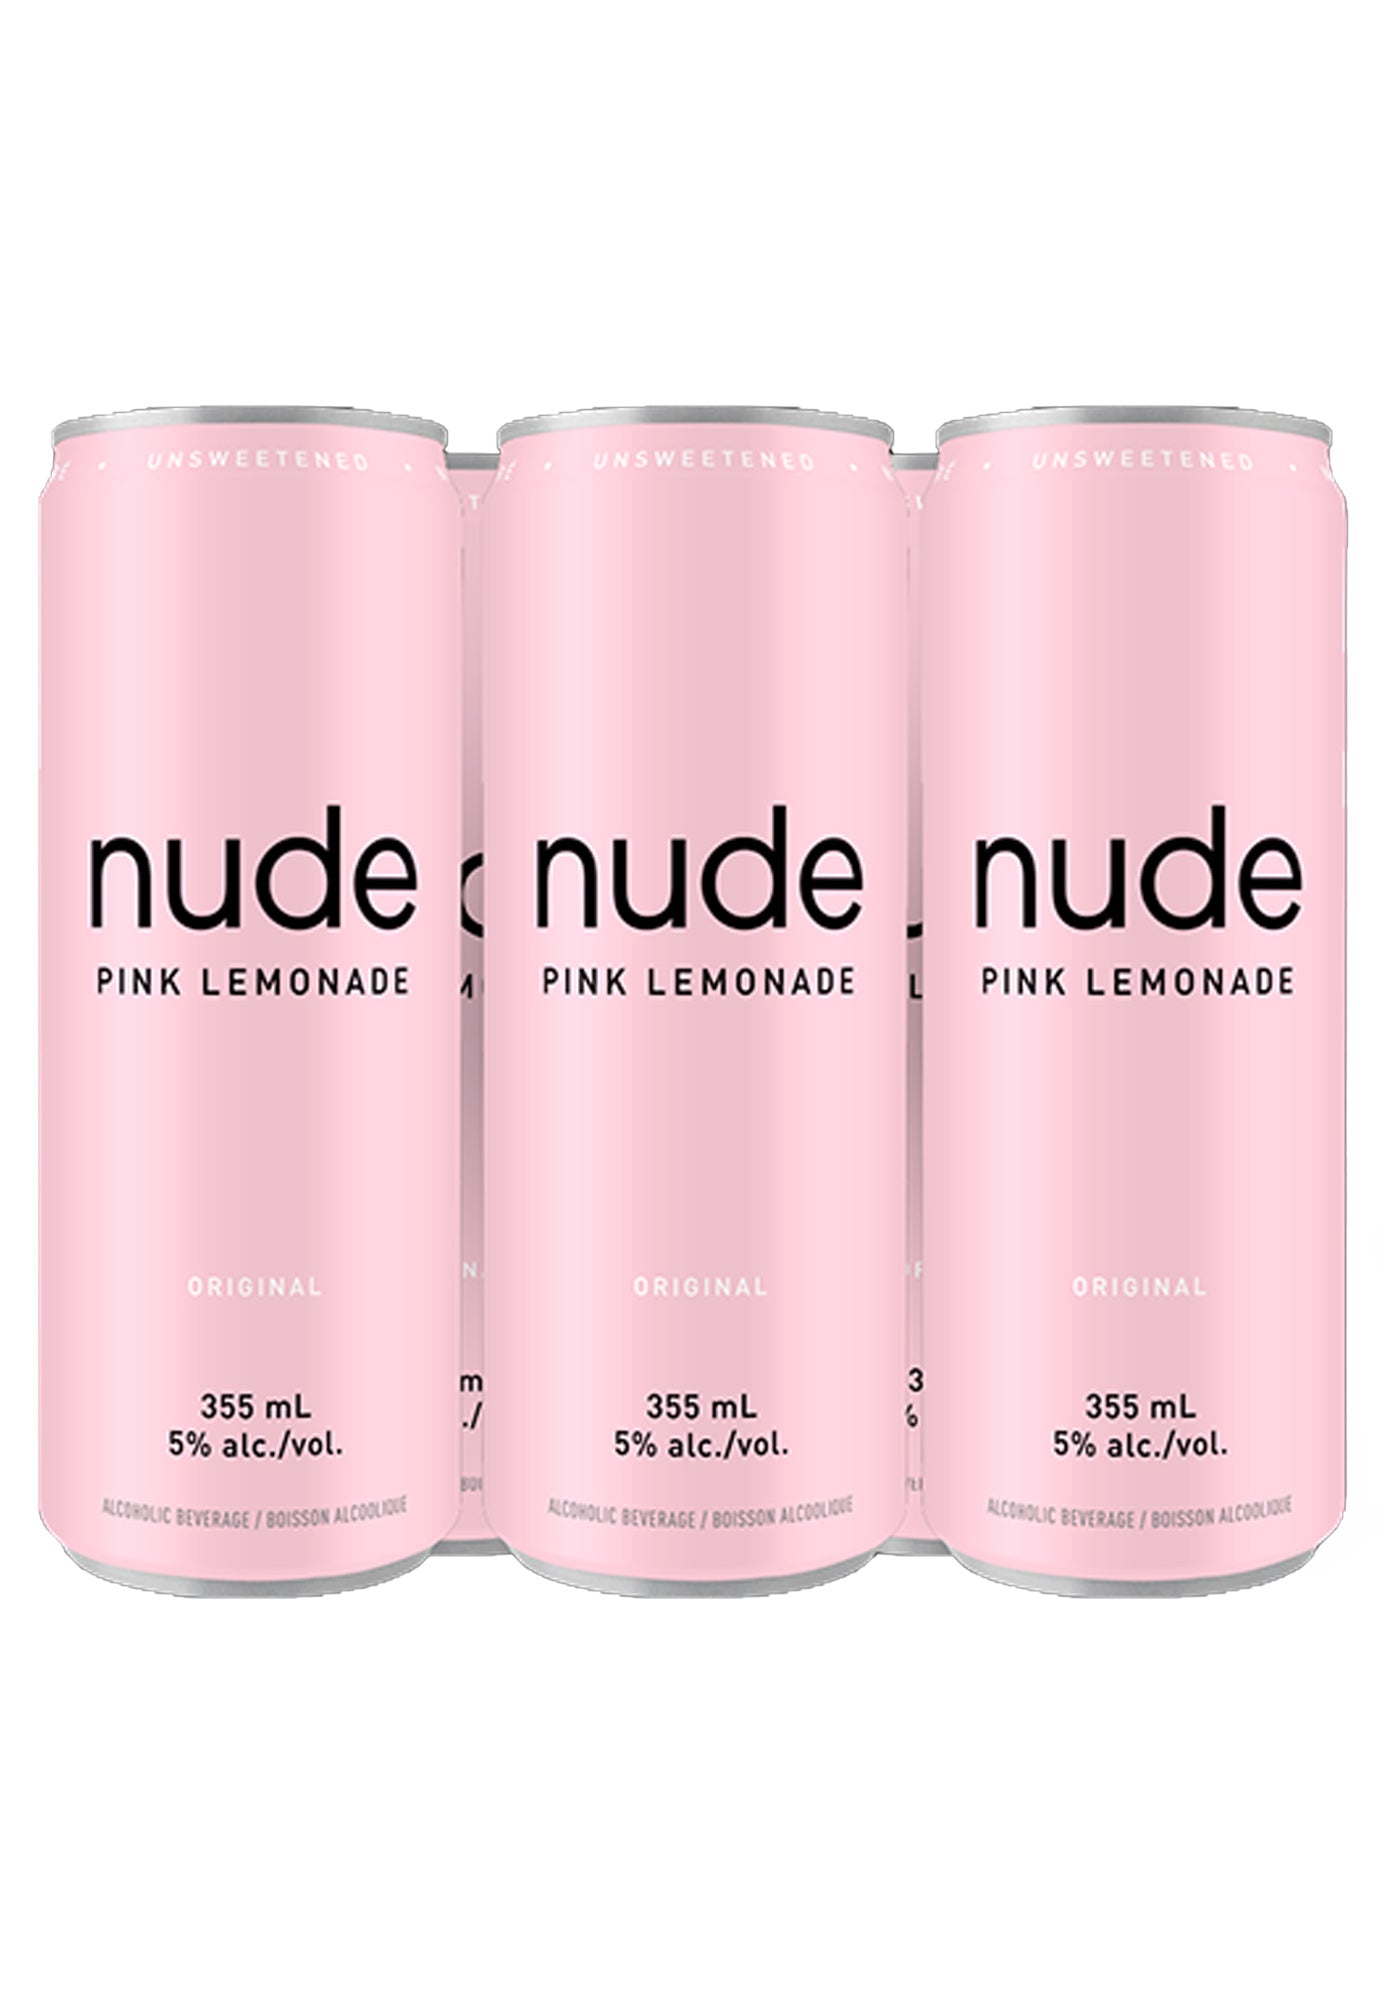 Nude Pink Lemonade 355 ml - 6 Cans